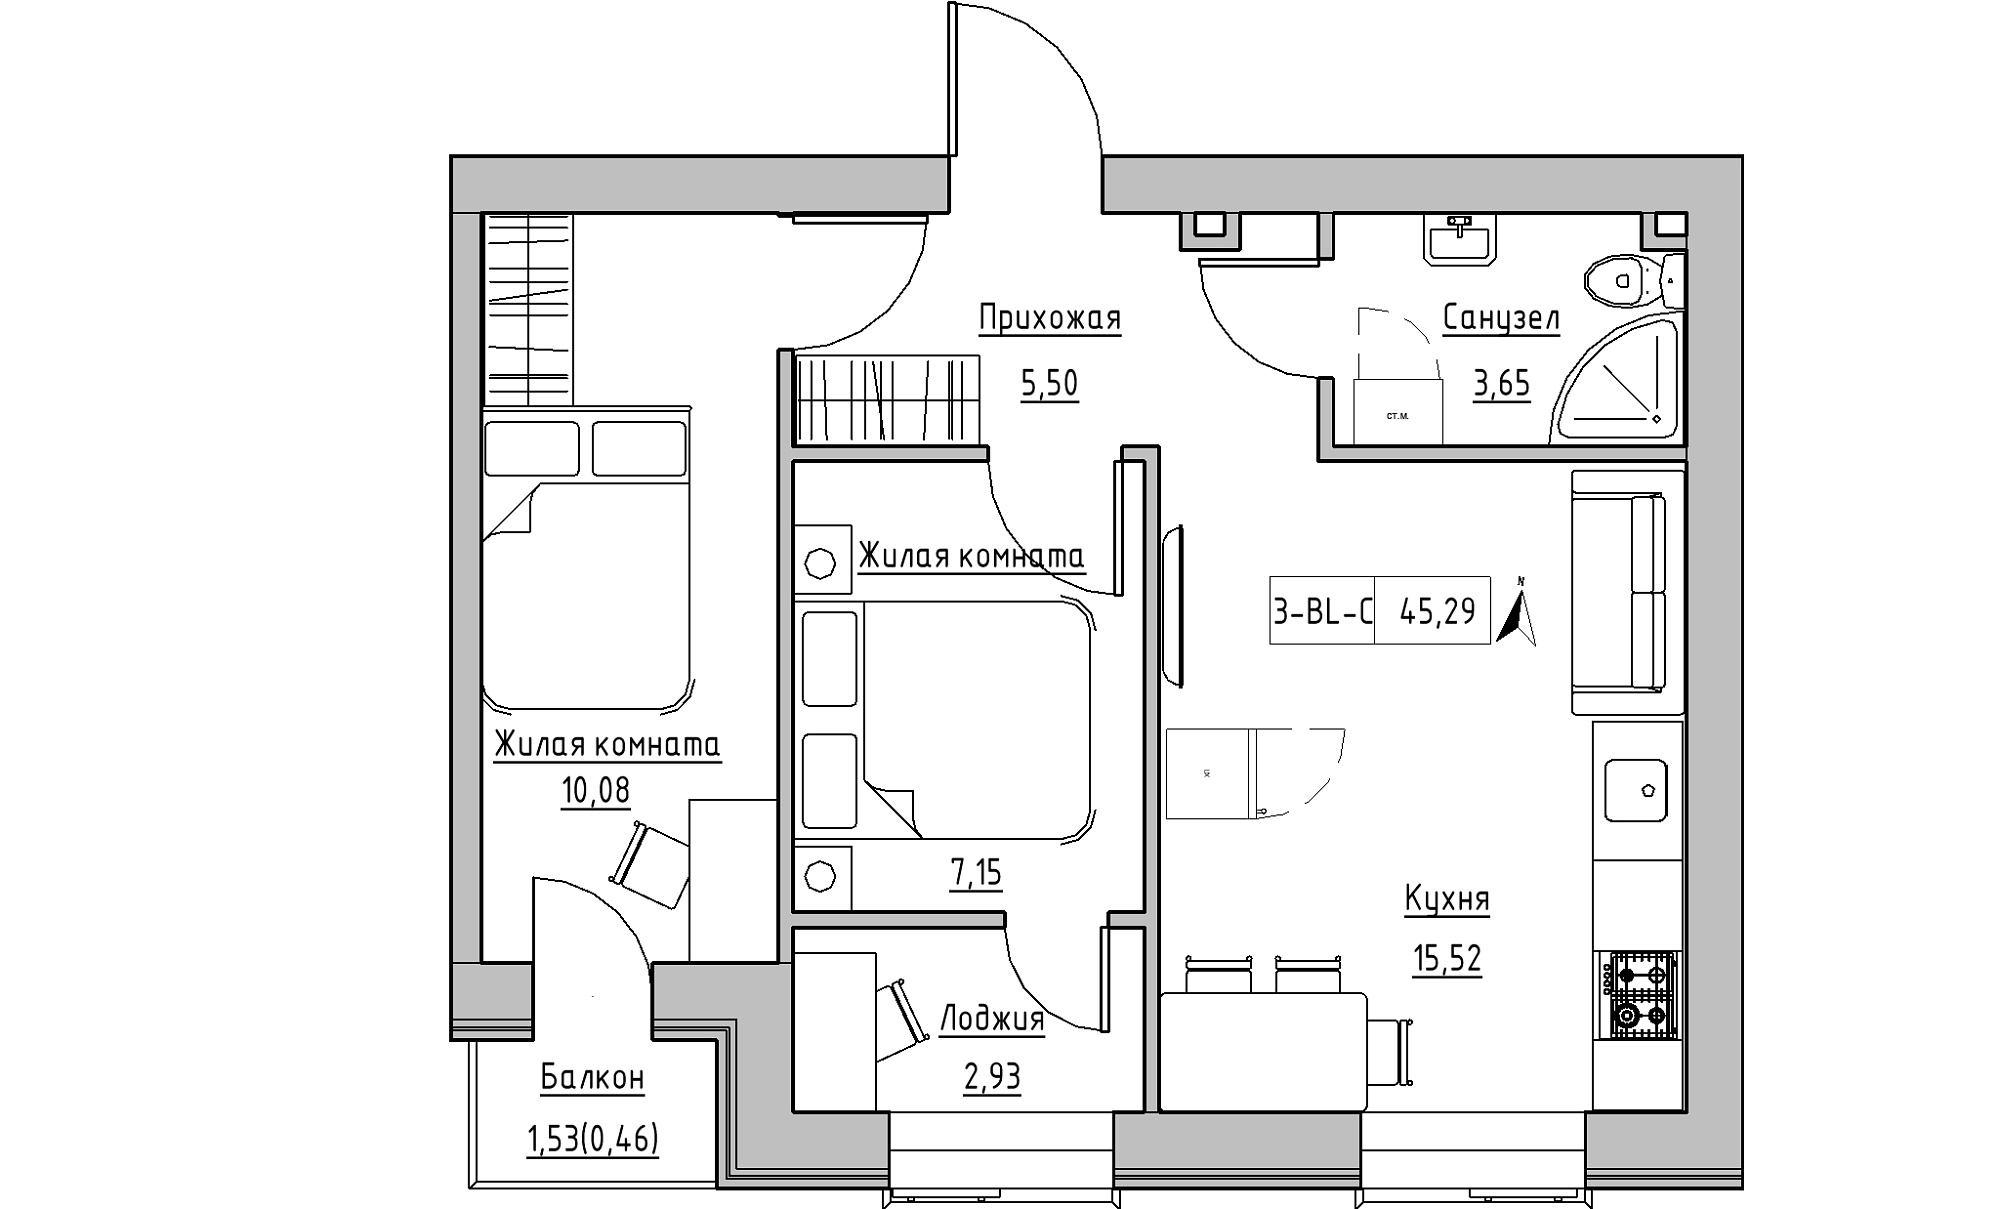 Планування 2-к квартира площею 45.29м2, KS-016-04/0008.